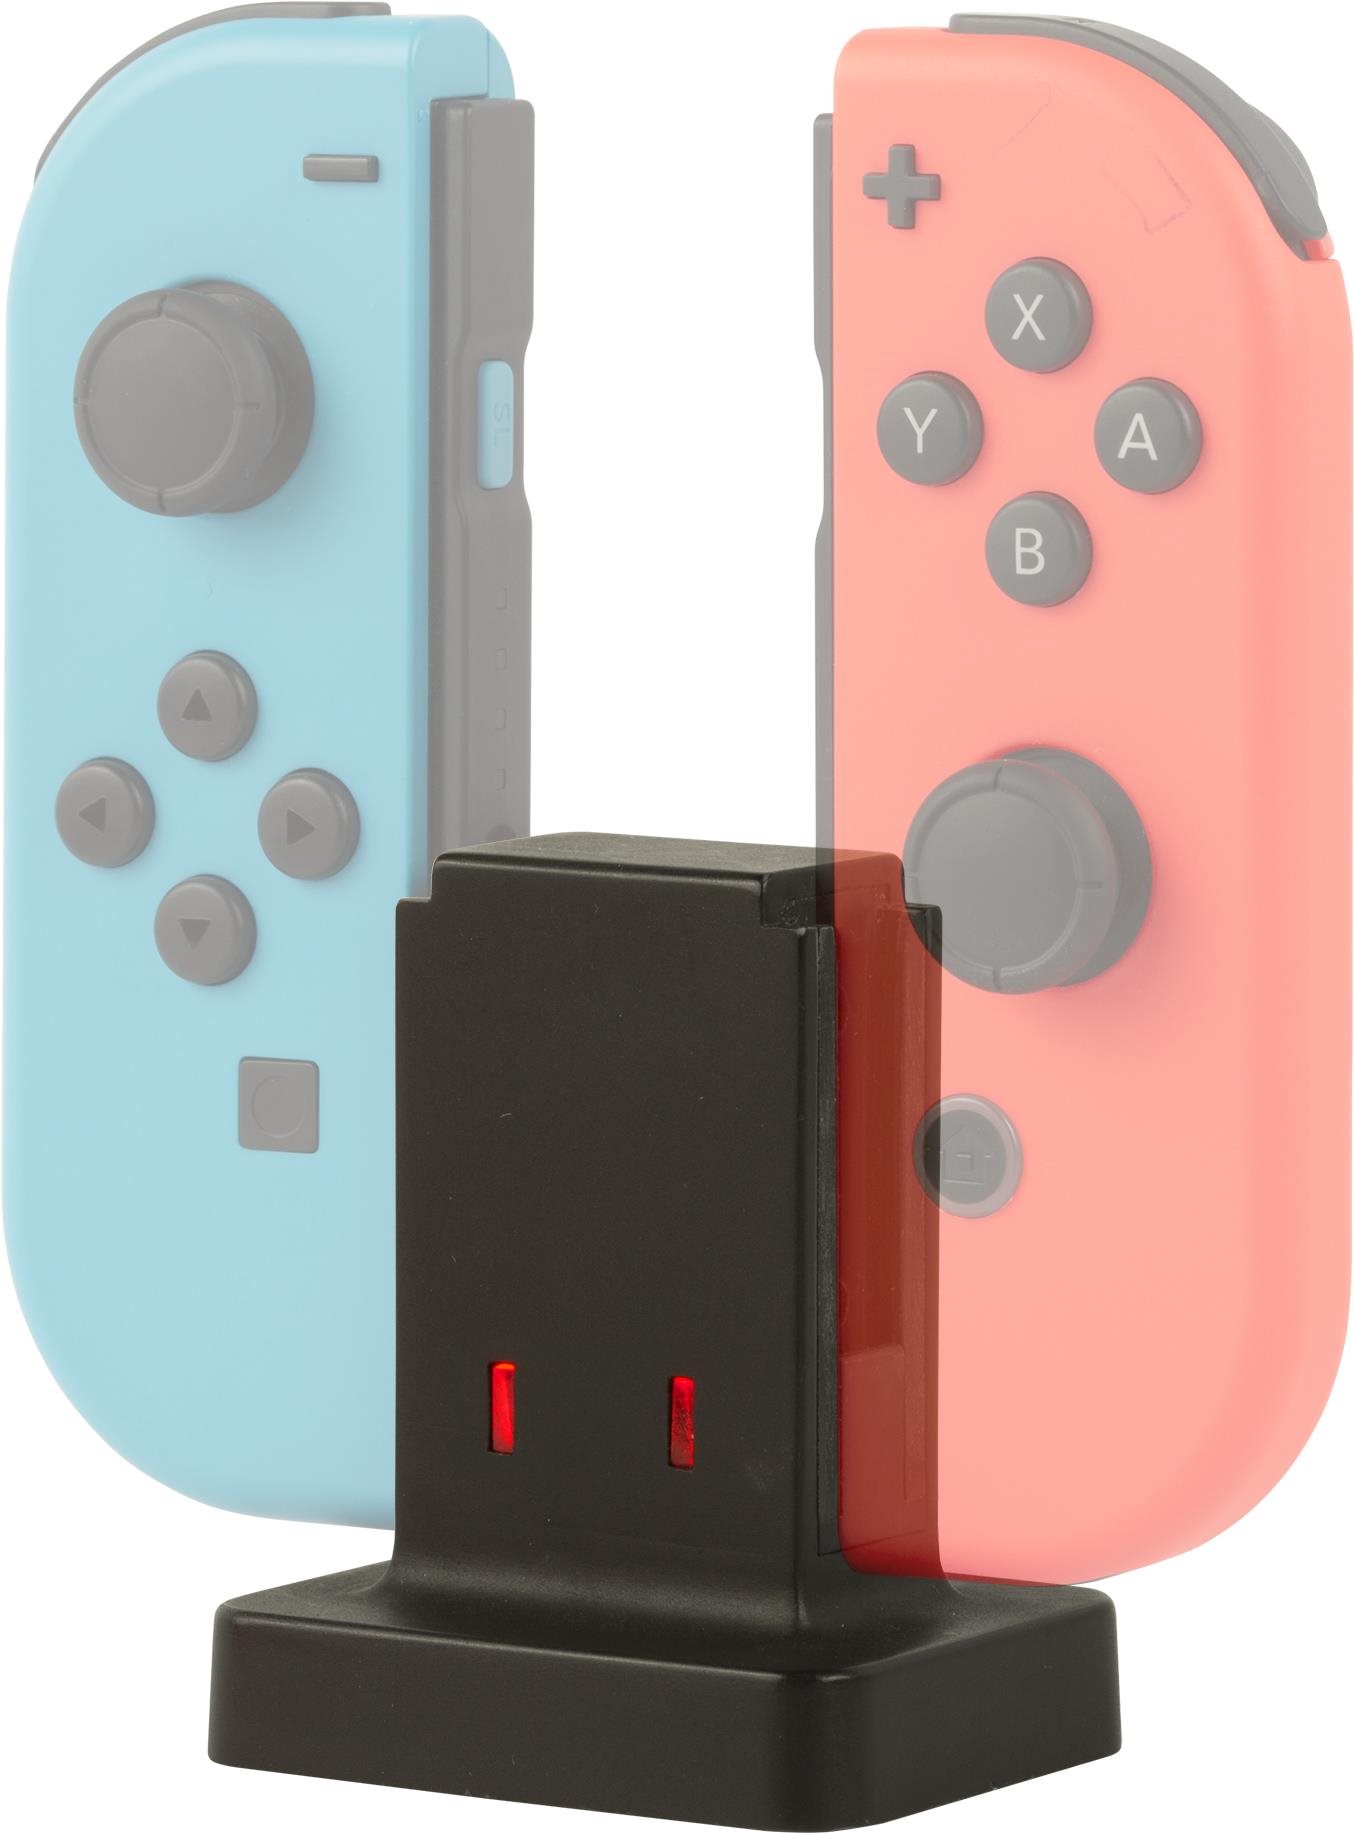 Mythics Nintendo Switch Dual Docking Station